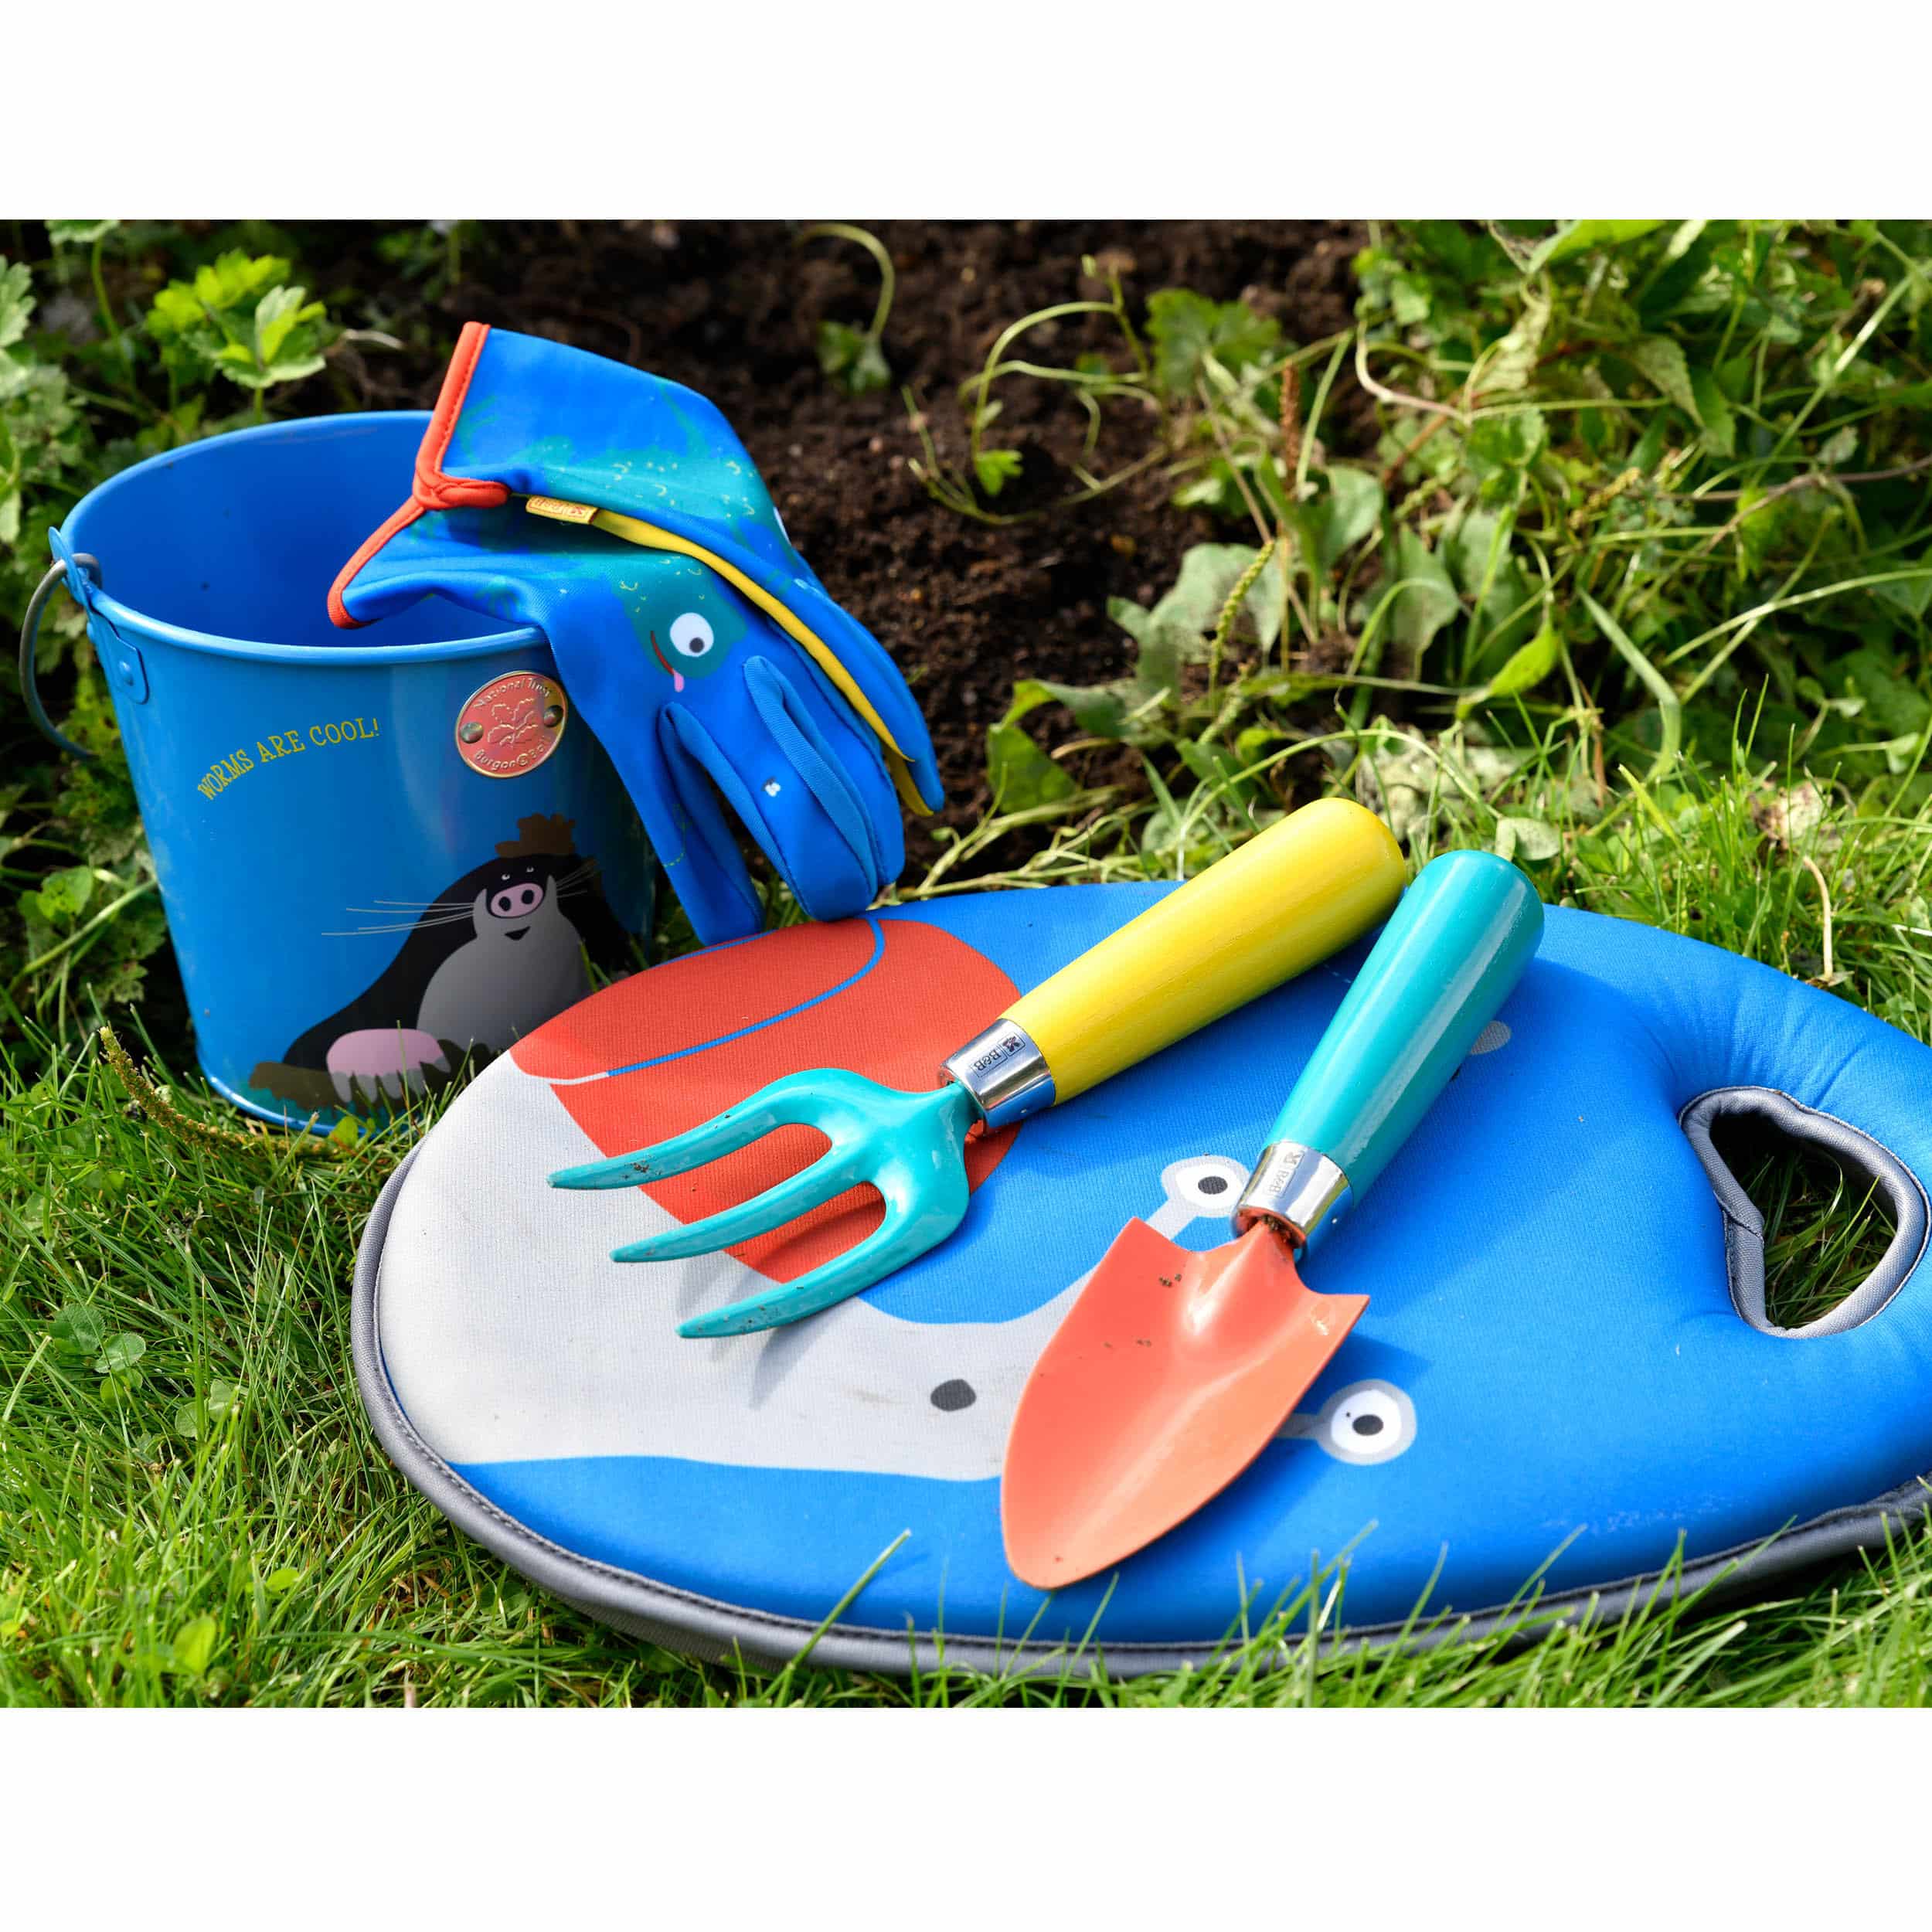 Gartenwerkzeug-Set für Kinder - National Trust